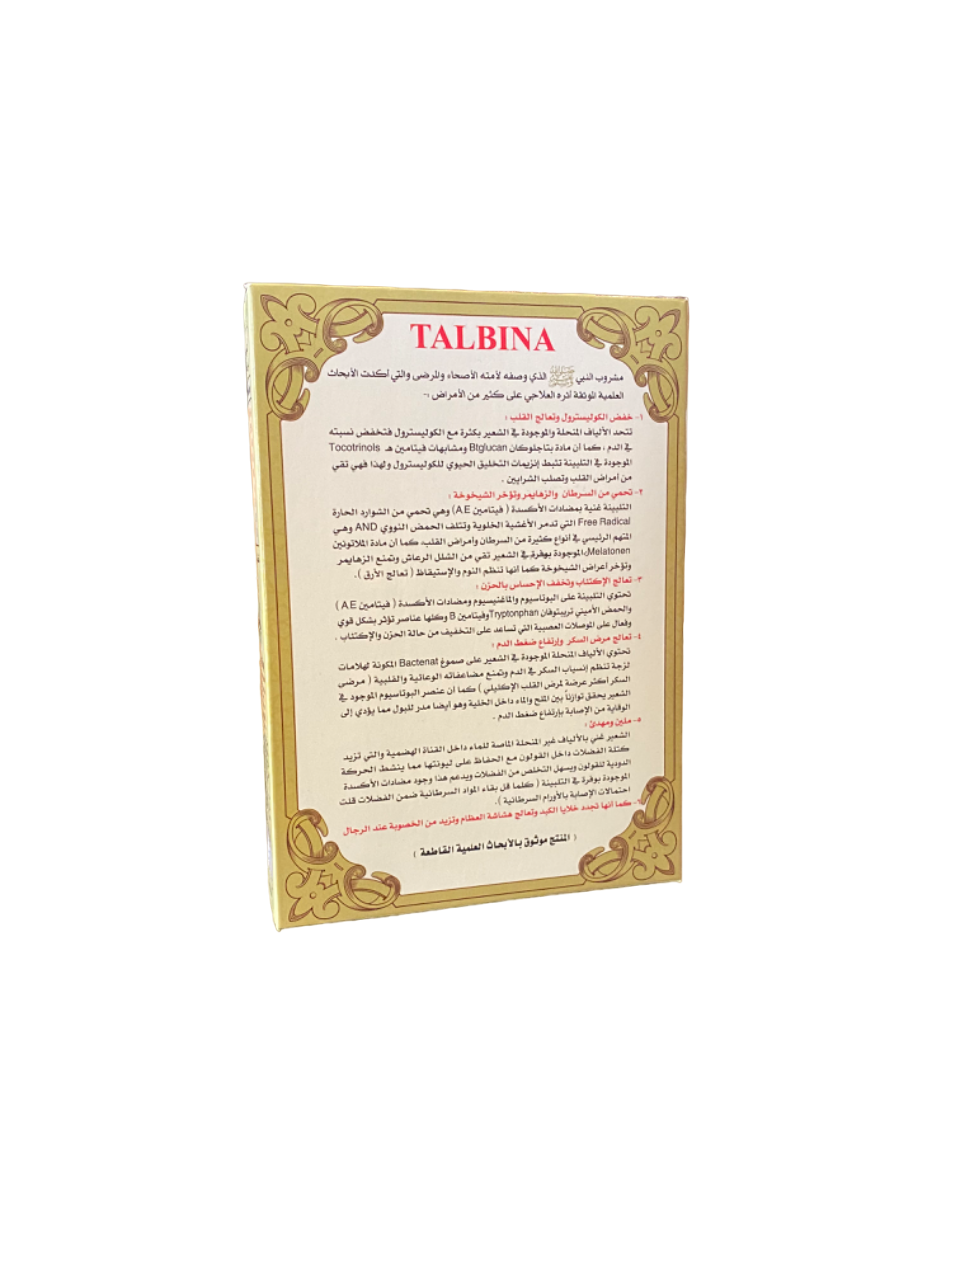 Talbina nabawiya - 200g - التلبينة النبوية ـ من إعجاز الطب النبوي ـ